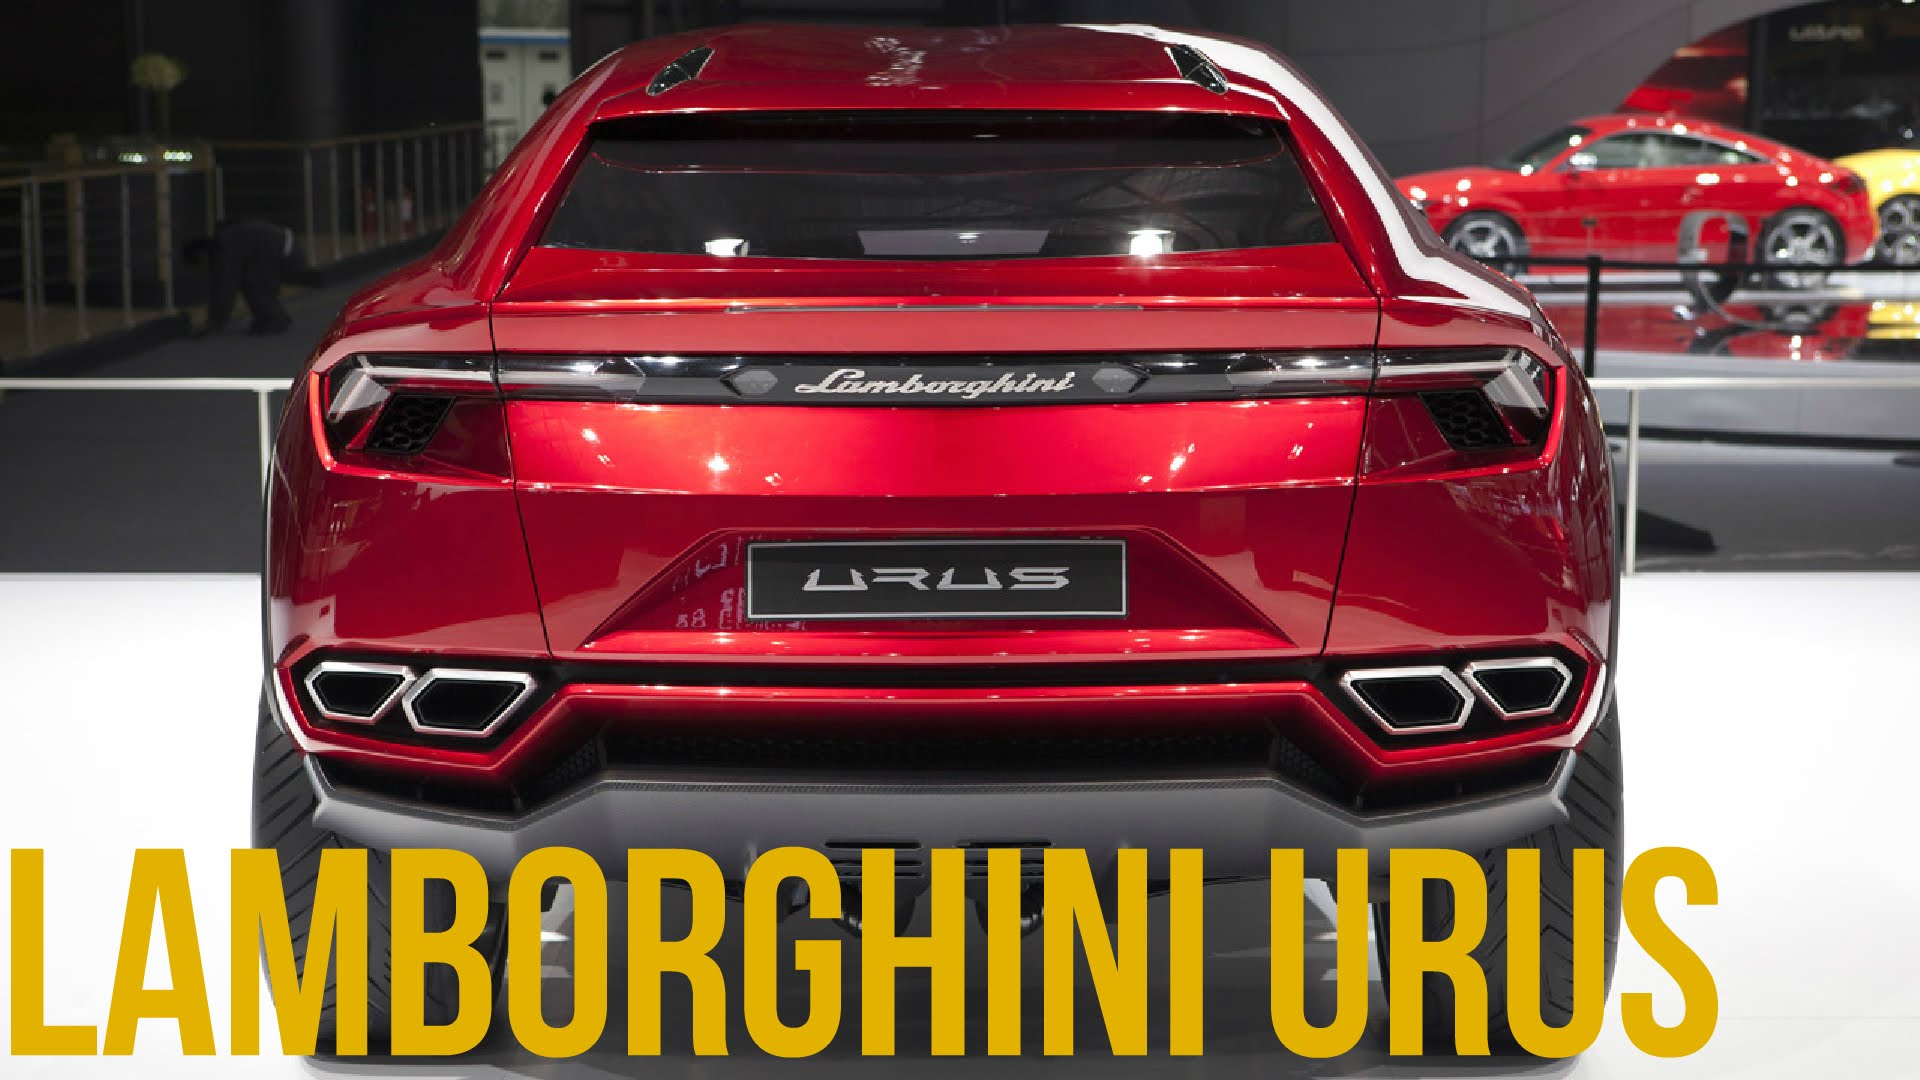 Lamborghini Urus HD wallpapers, Desktop wallpaper - most viewed